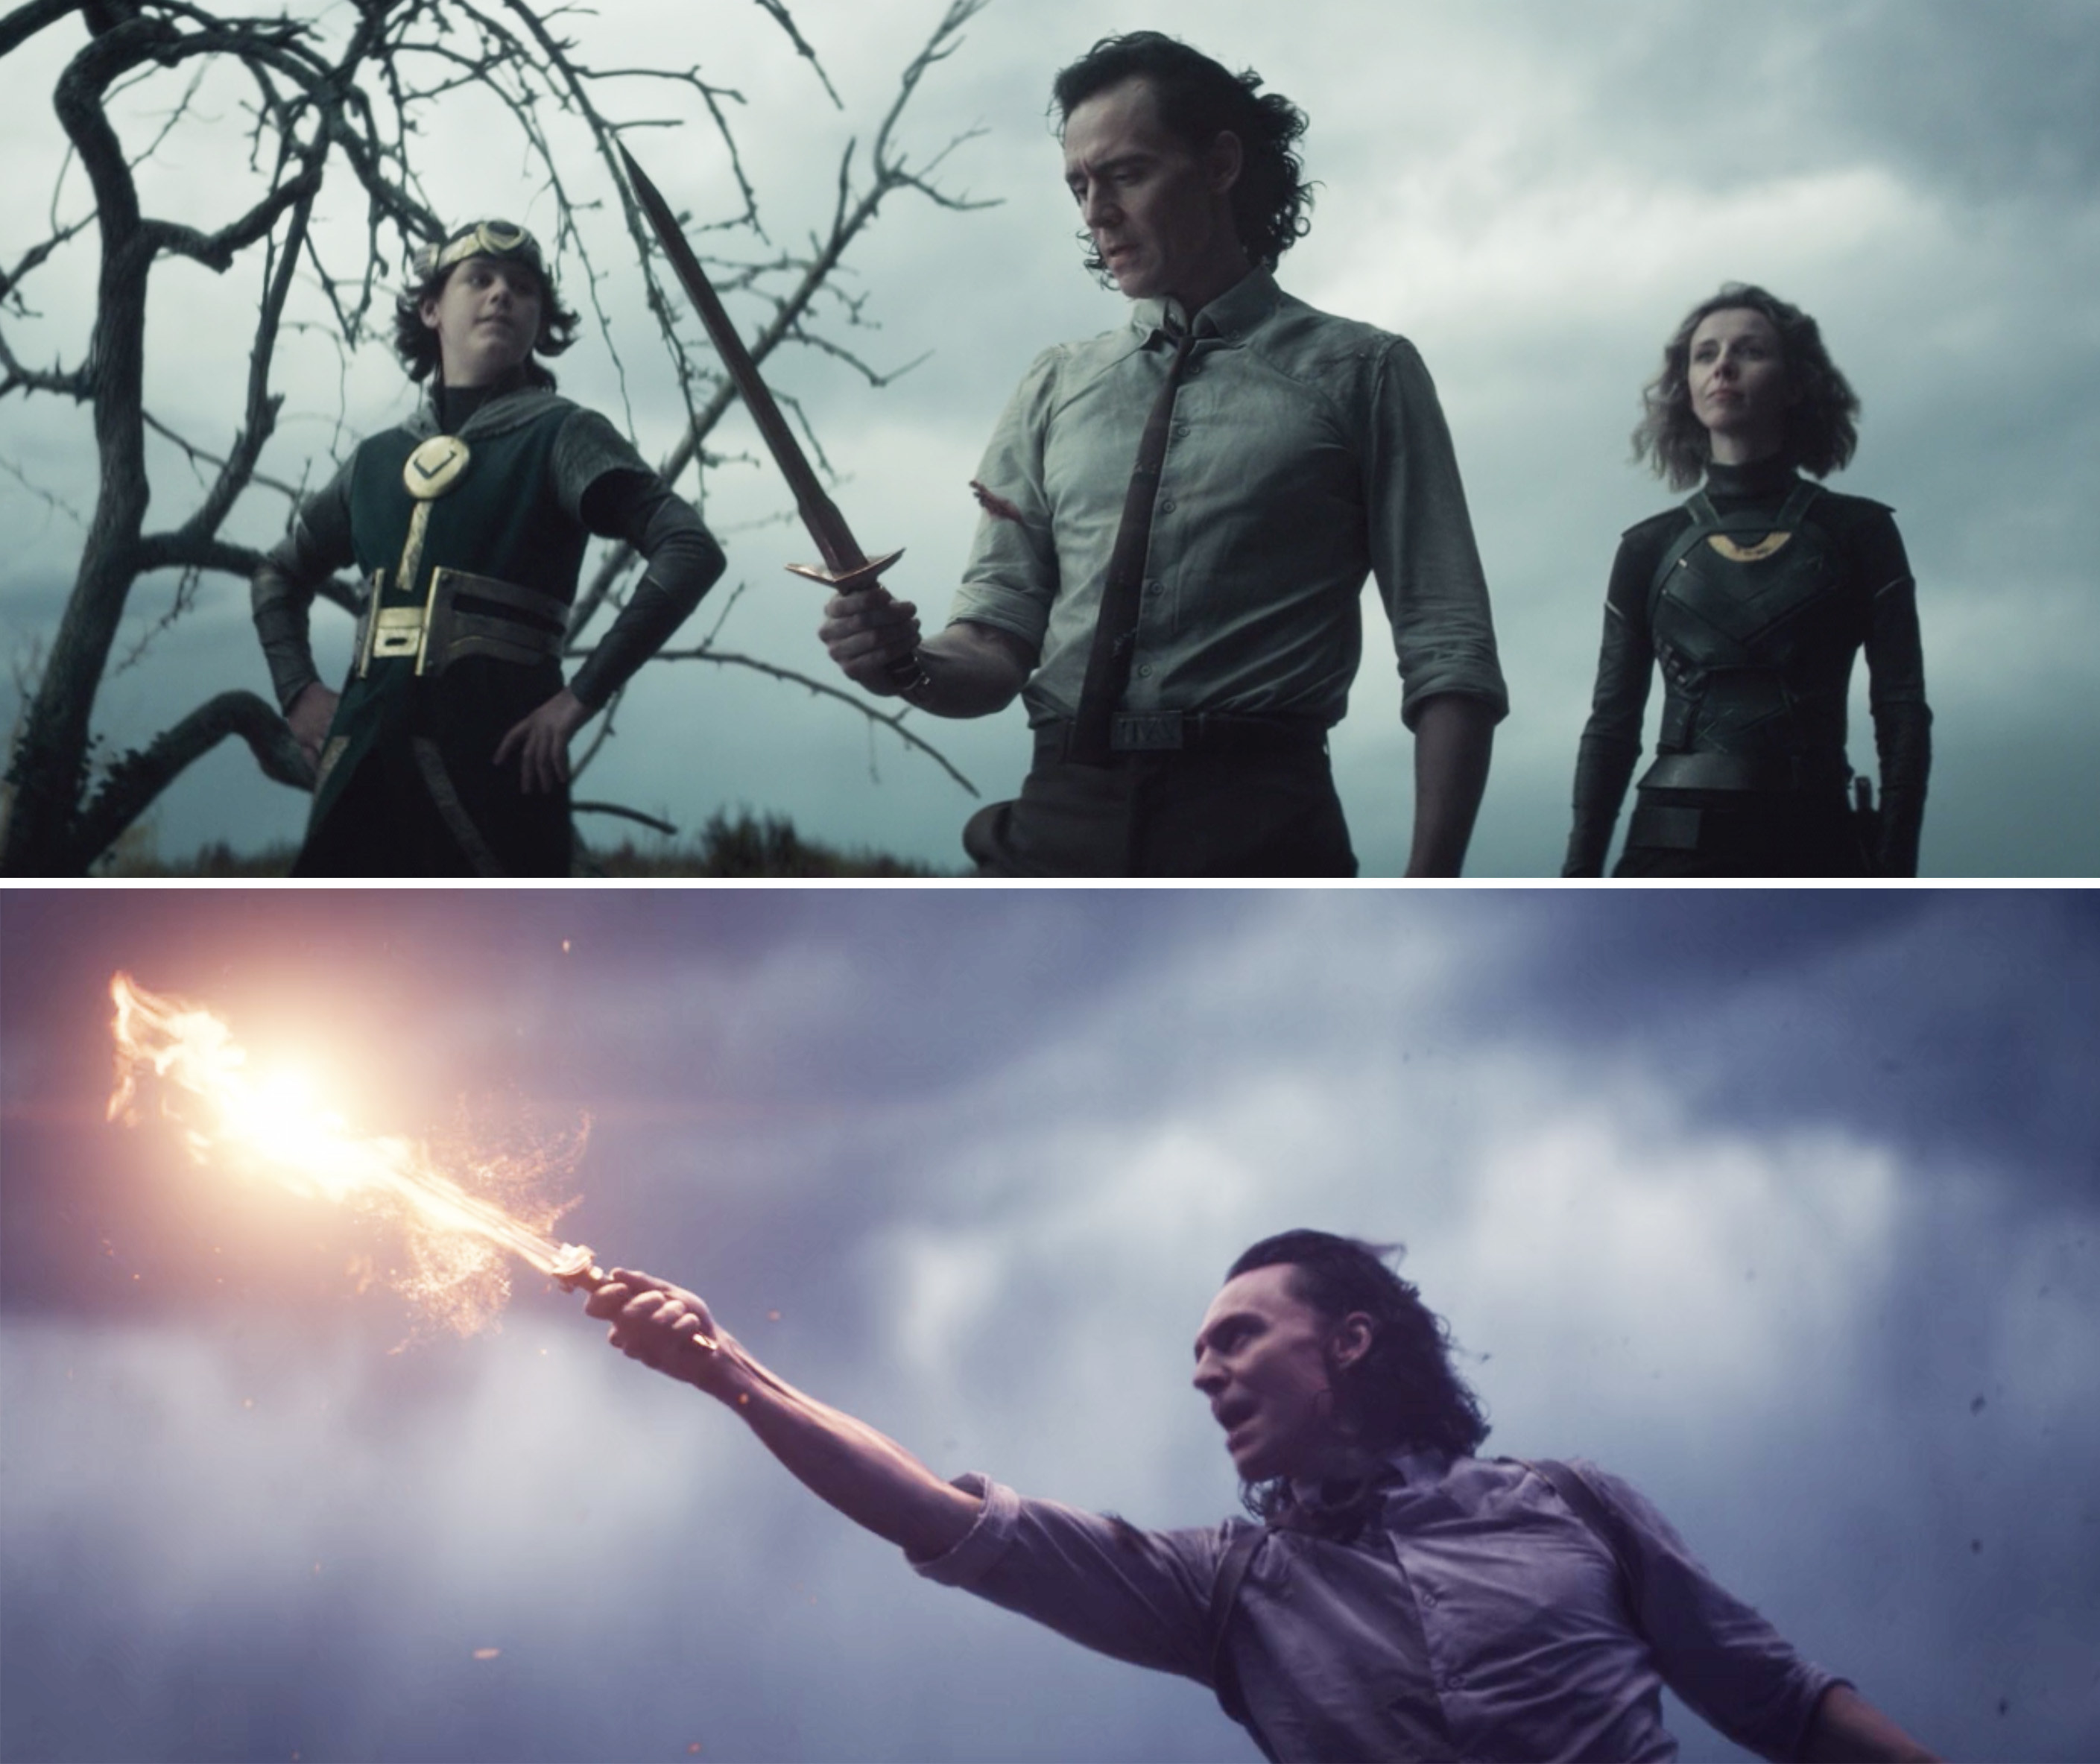 Loki weilding a flaming sword